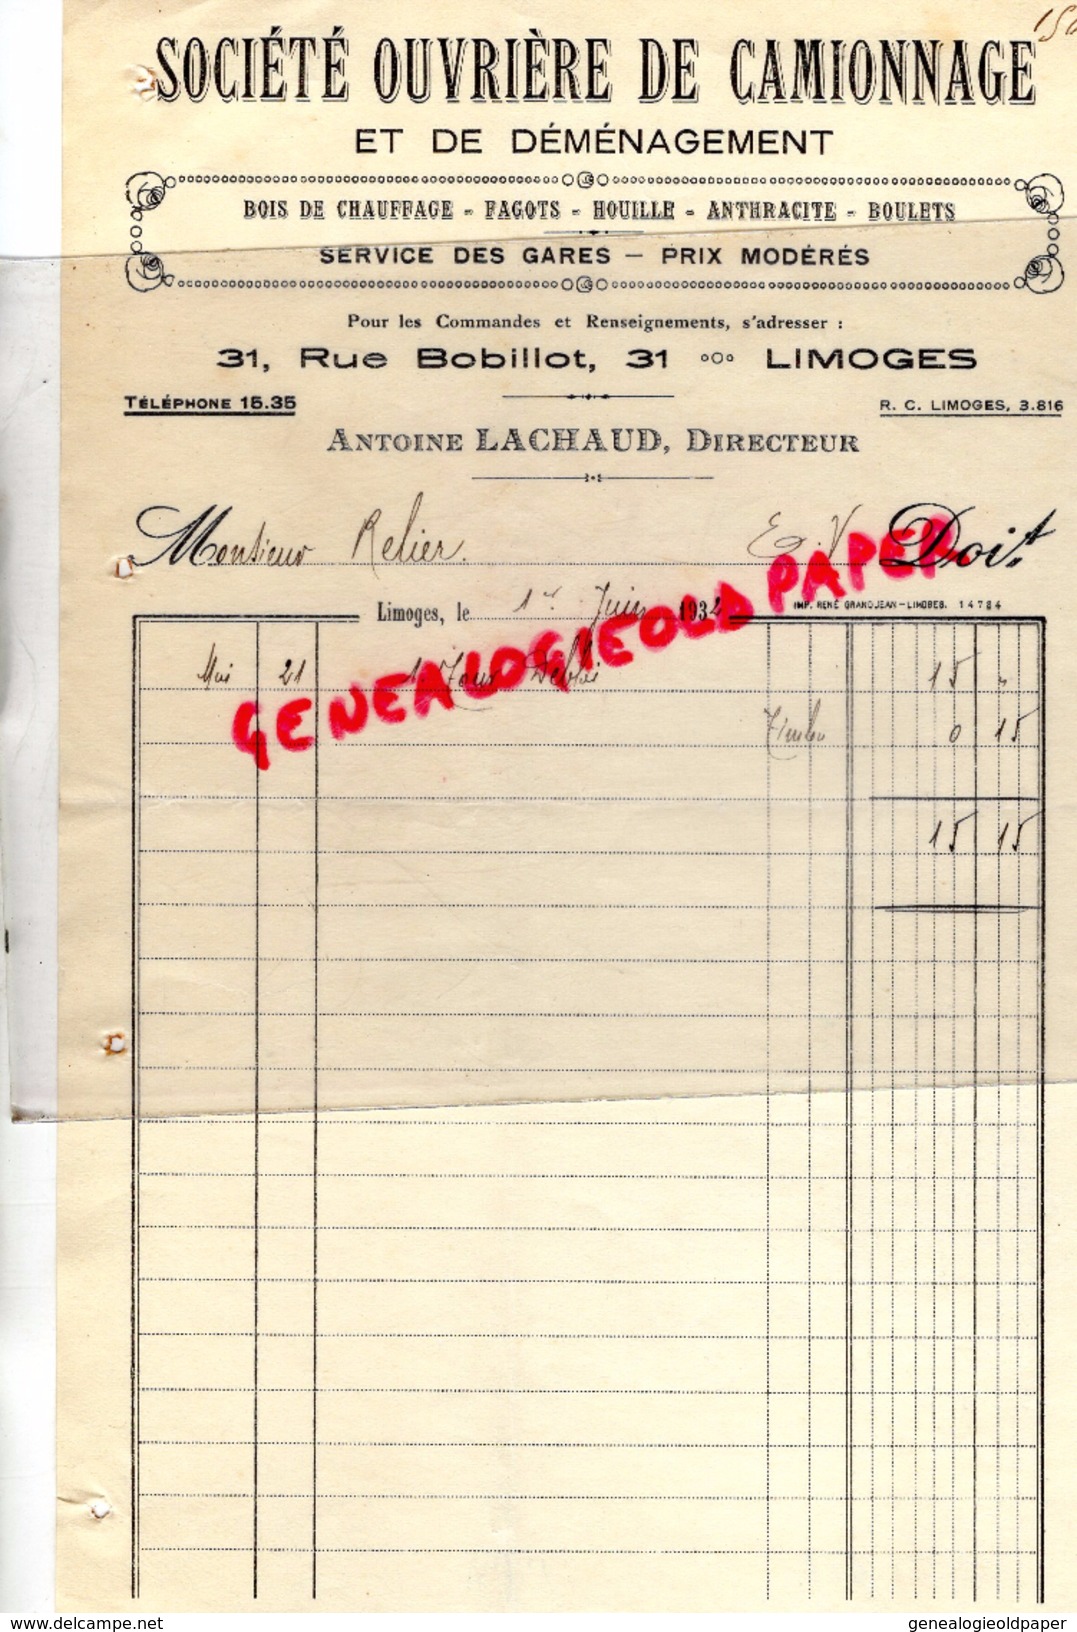 87 - LIMOGES - FACTURE SOCIETE OUVRIERE CAMIONNAGE DEMENAGEMENT- 31 RUE BOBILLOT- ANTOINE LACHAUD- 1932 - Transporte